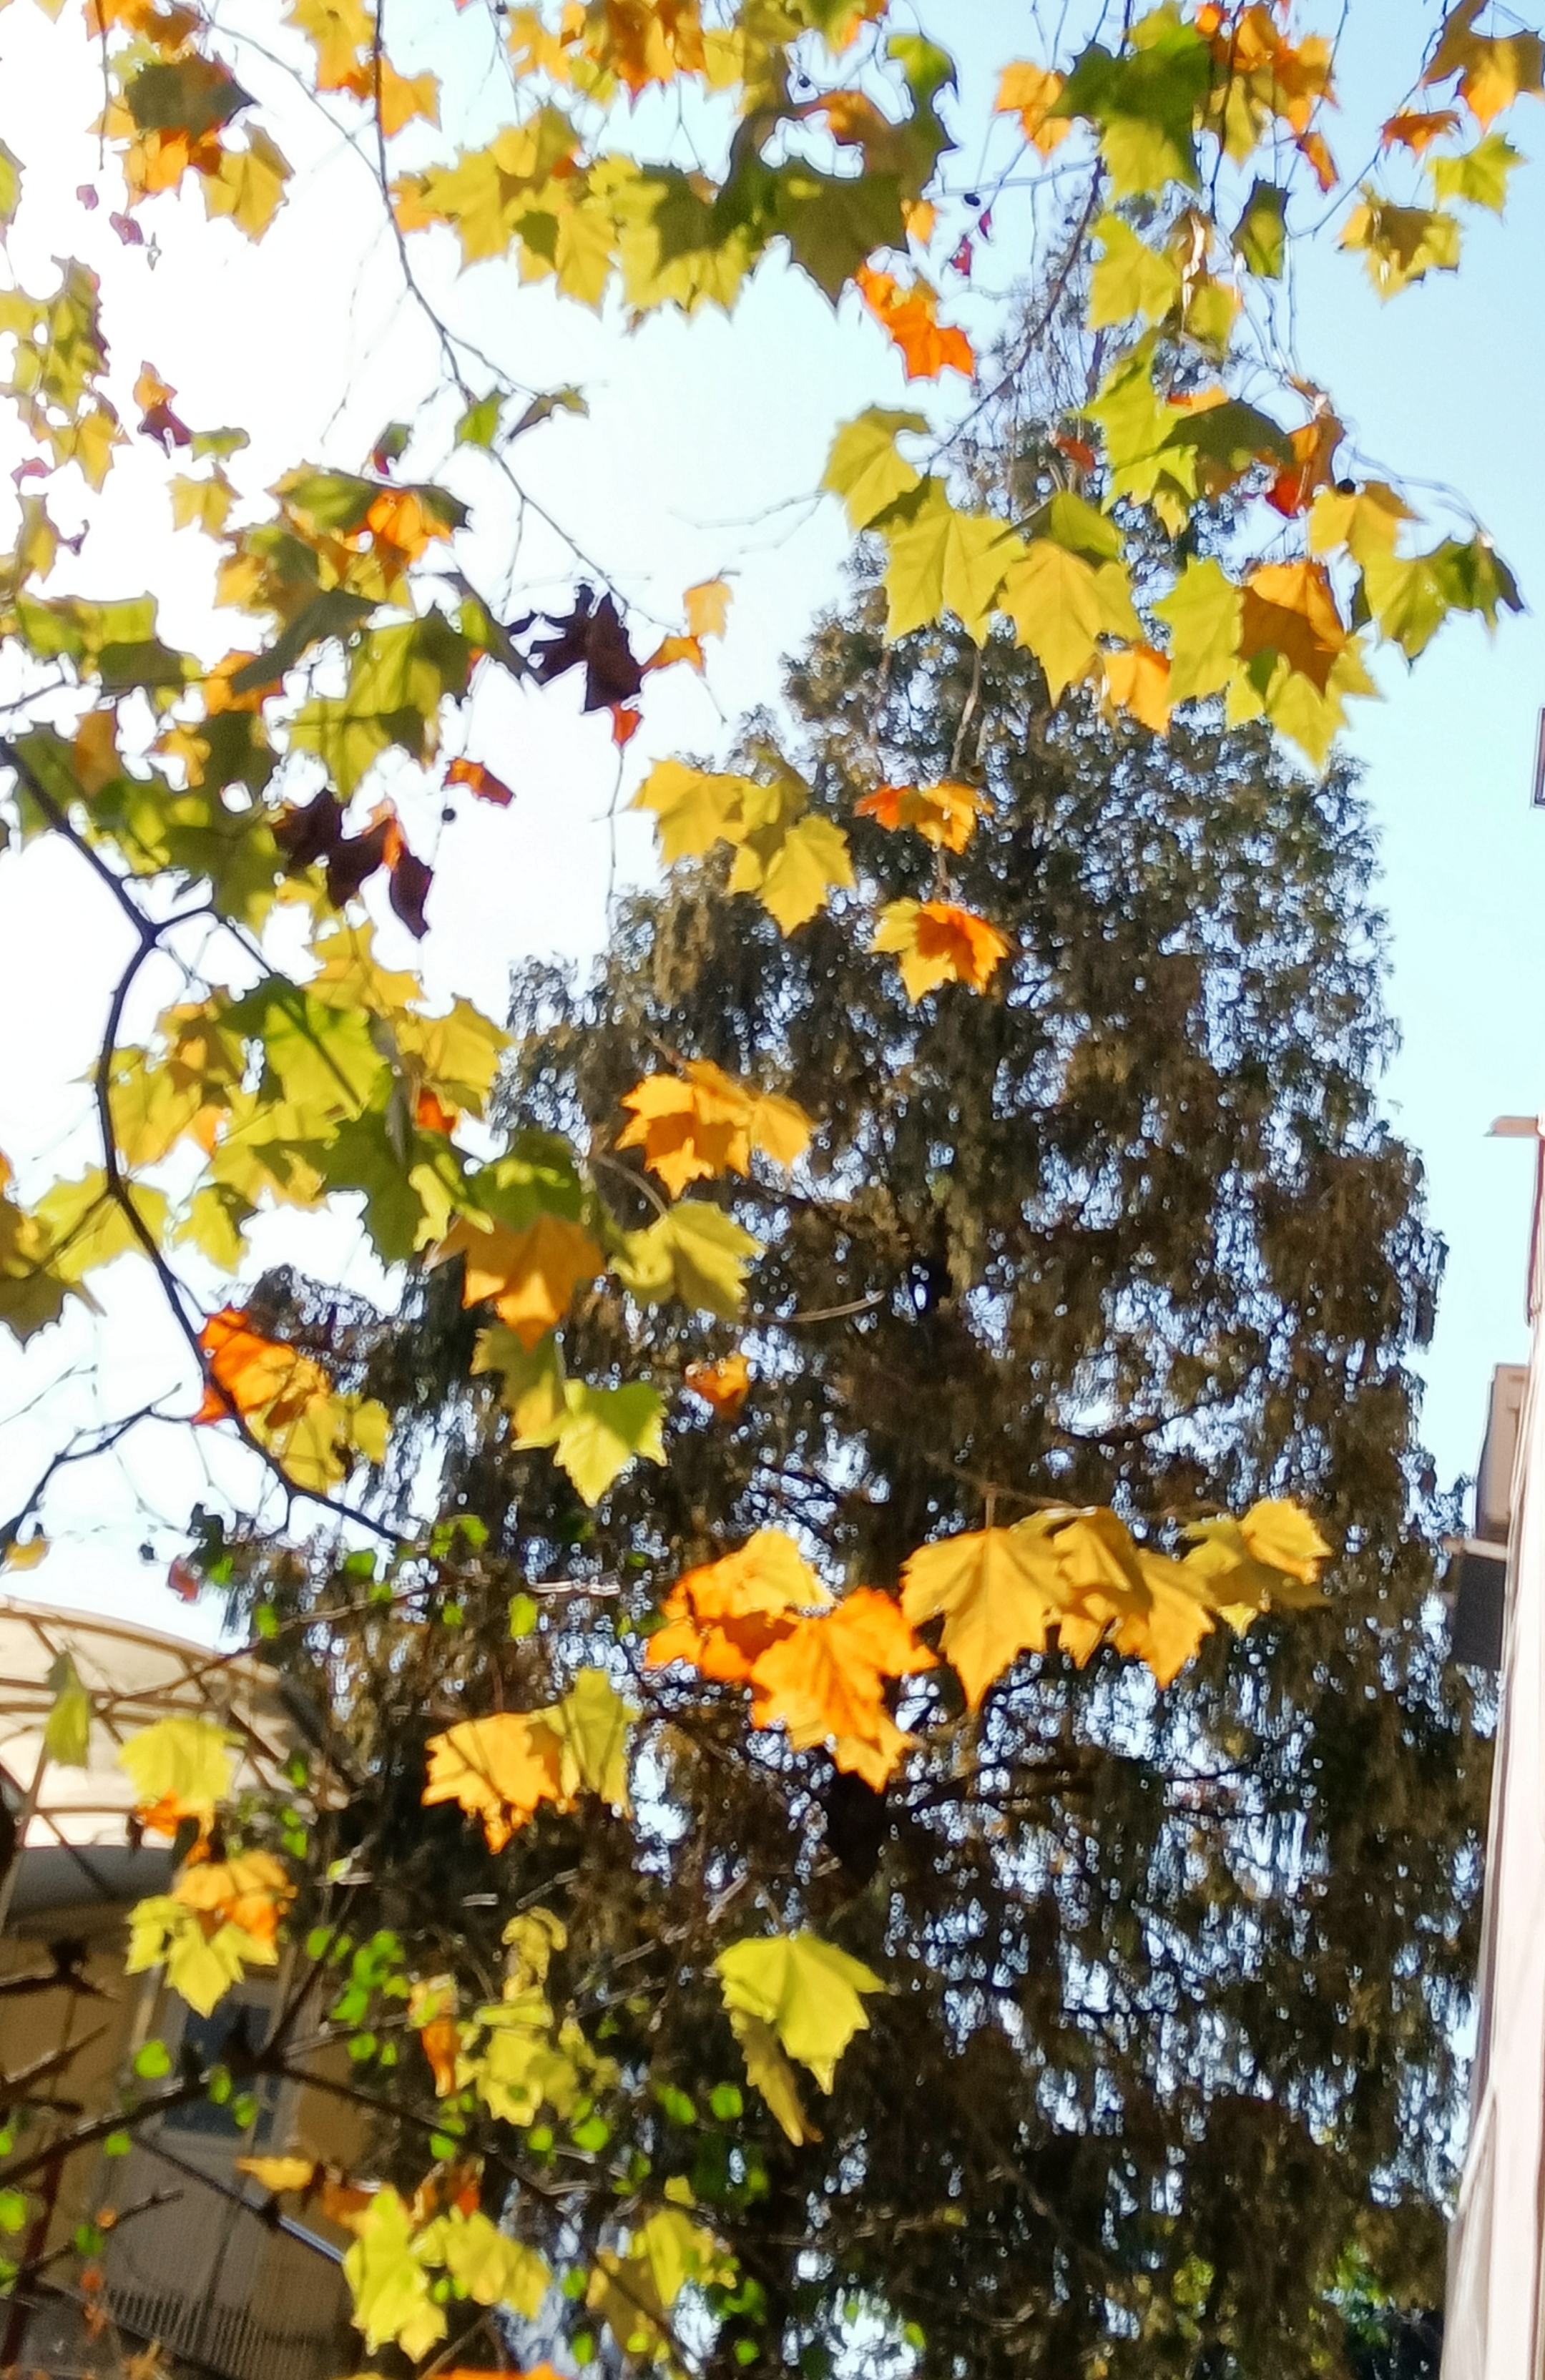 秋天的梧桐树叶,或绿,或黄,或绿中带红,秋风一吹,叶子随着风在空中